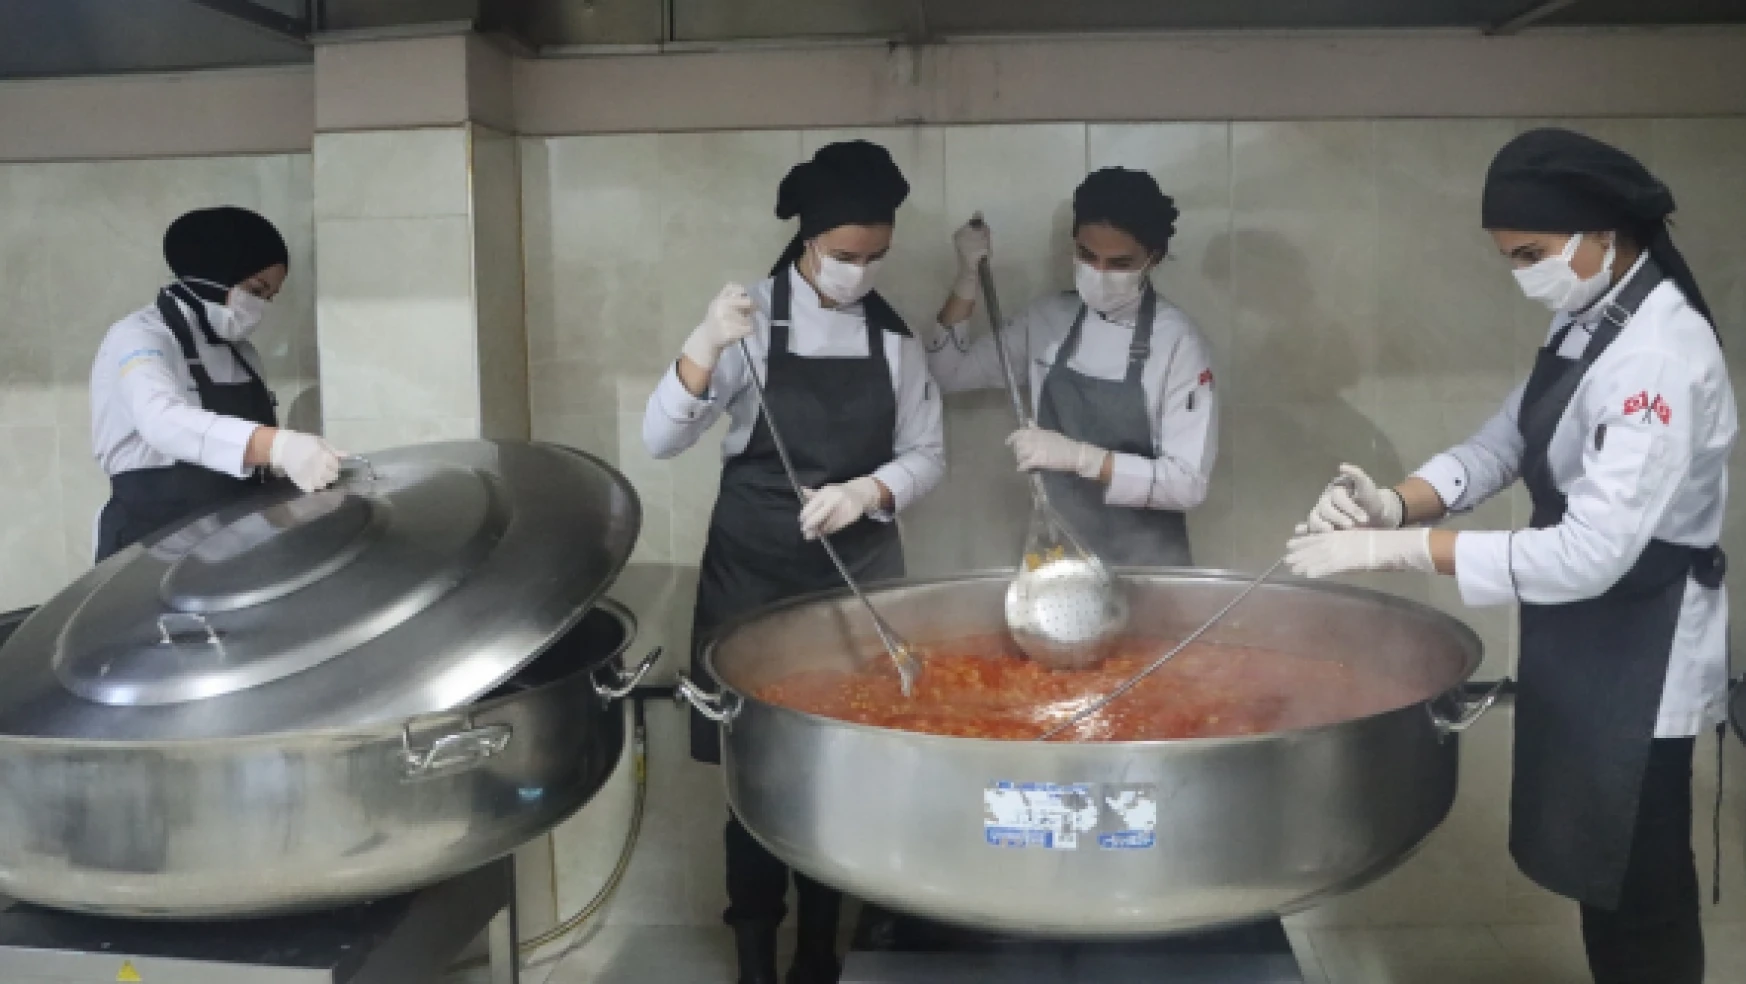 Erciş'te aşçı adayları binlerce öğrenci için yapılan yemeklere yardım ediyor